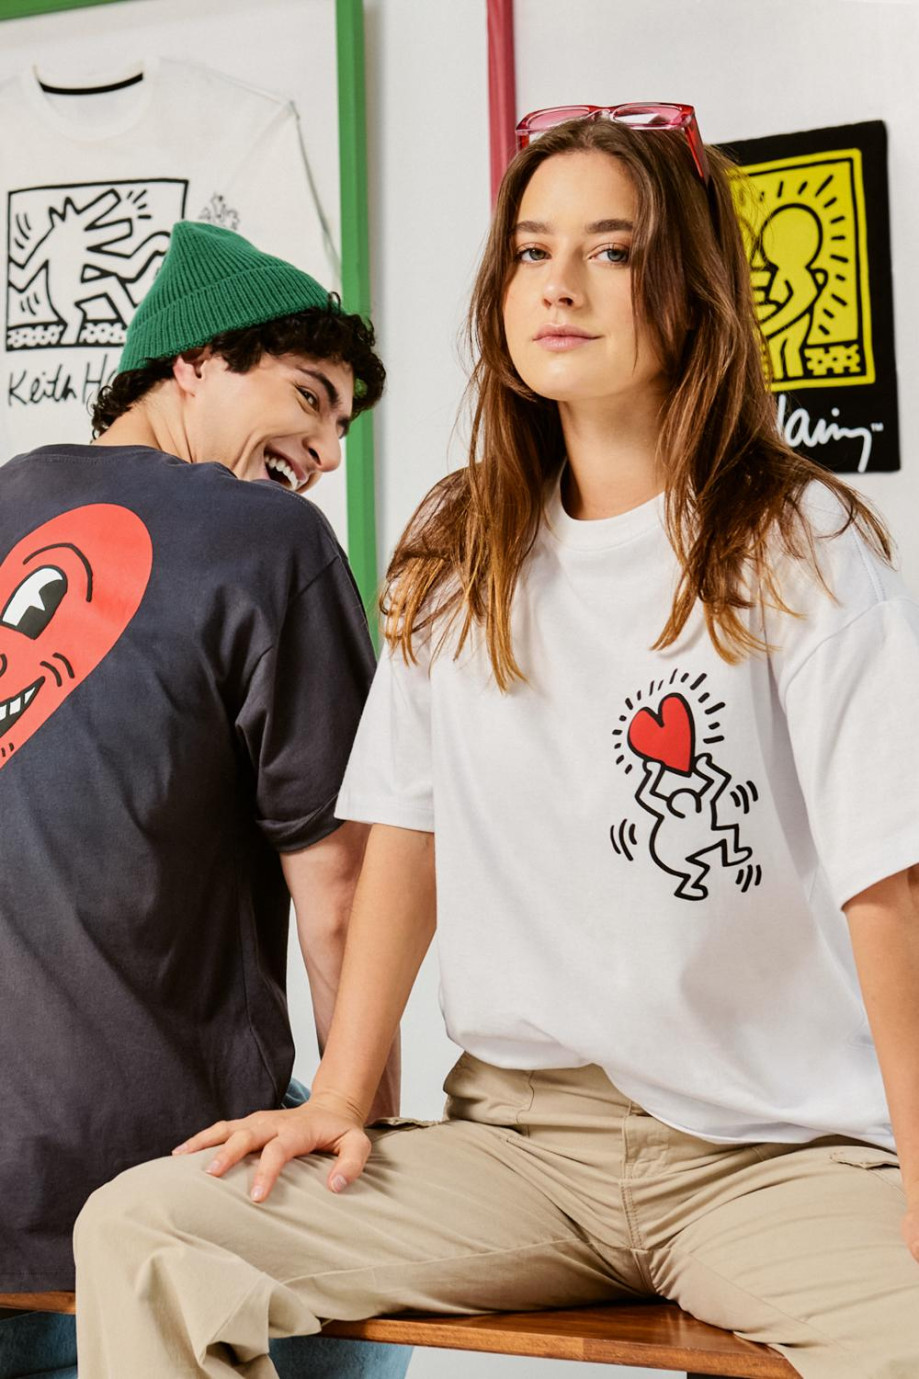 Camiseta blanca oversize con diseños de Keith Haring